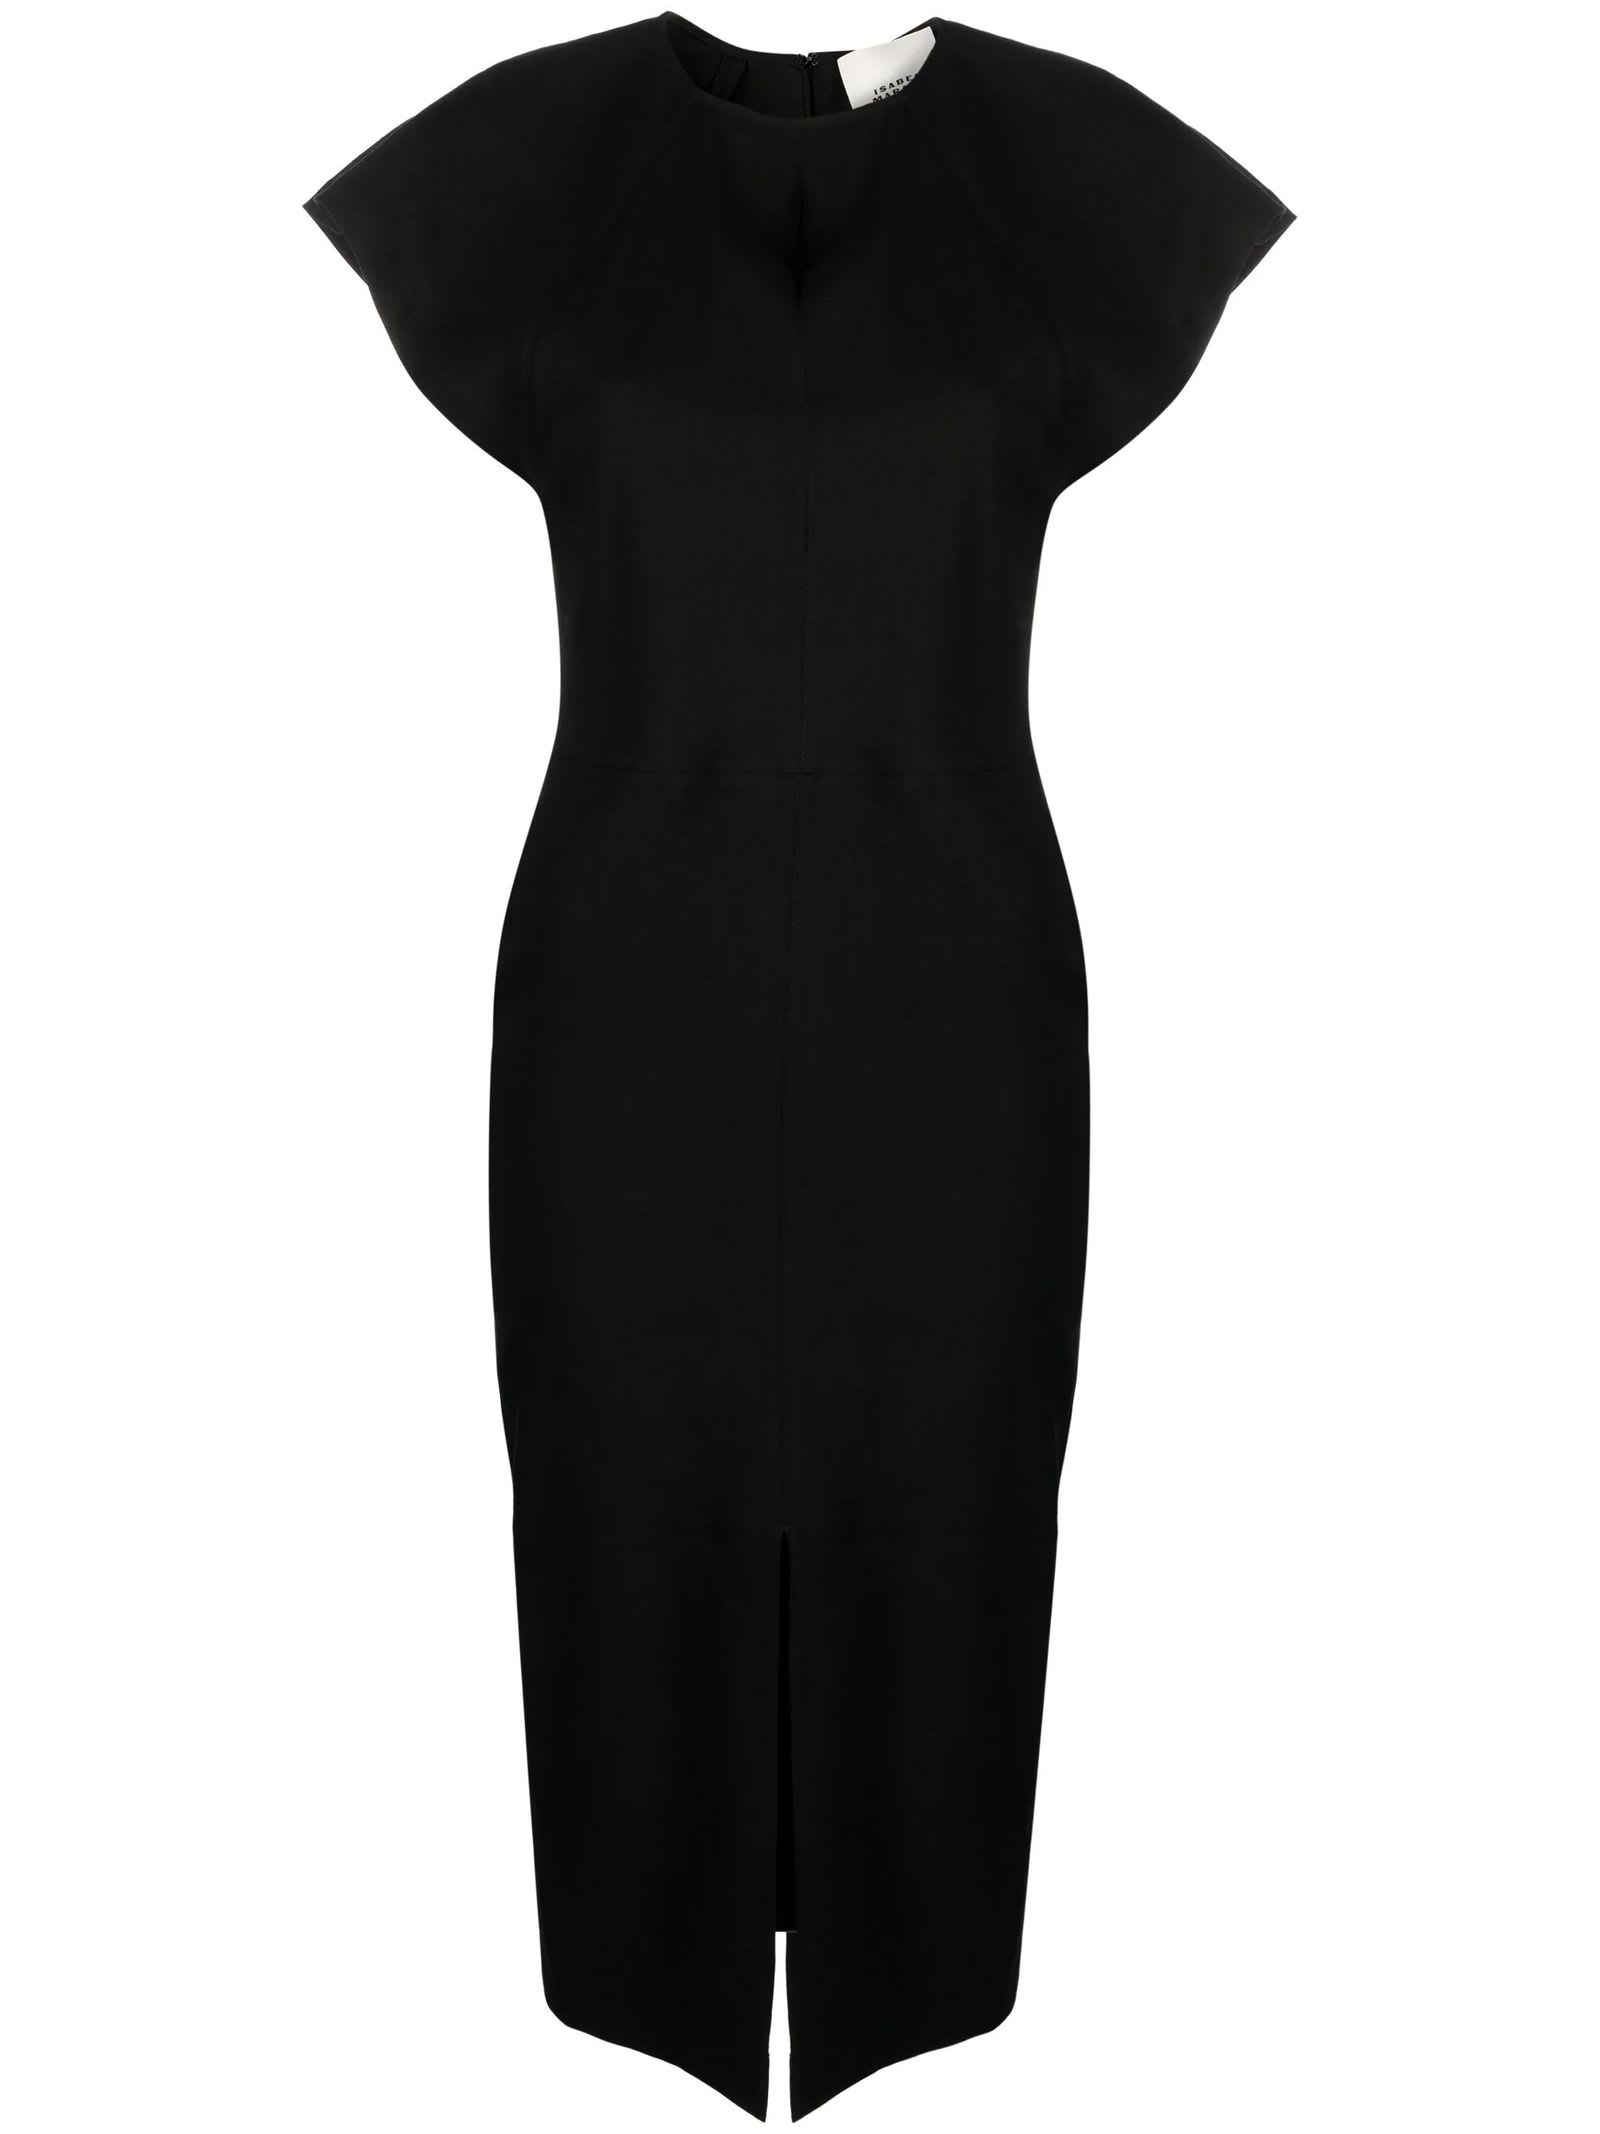 Shop Isabel Marant Black Pencil Dress